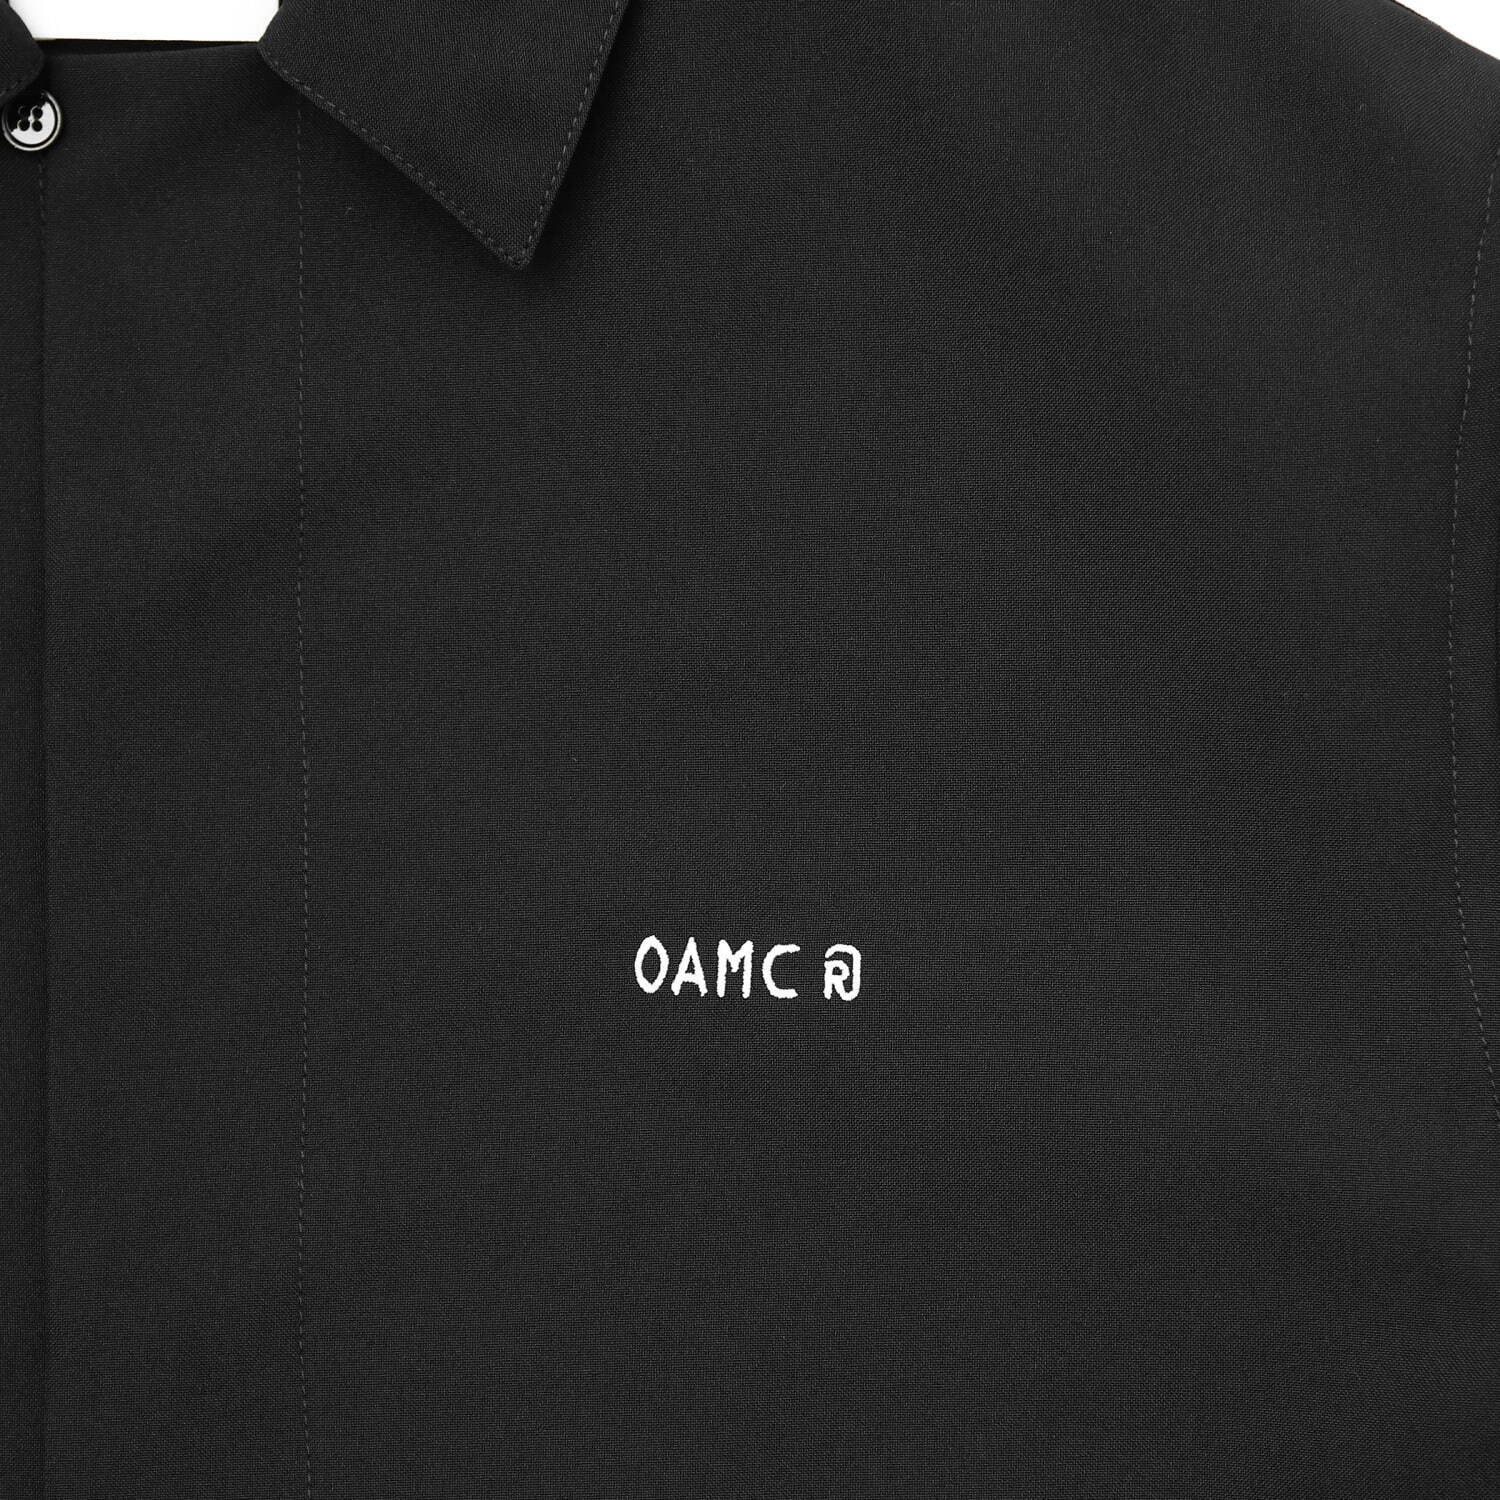 OAMCのエディション別注、半袖にアレンジしたジップアップシャツや 